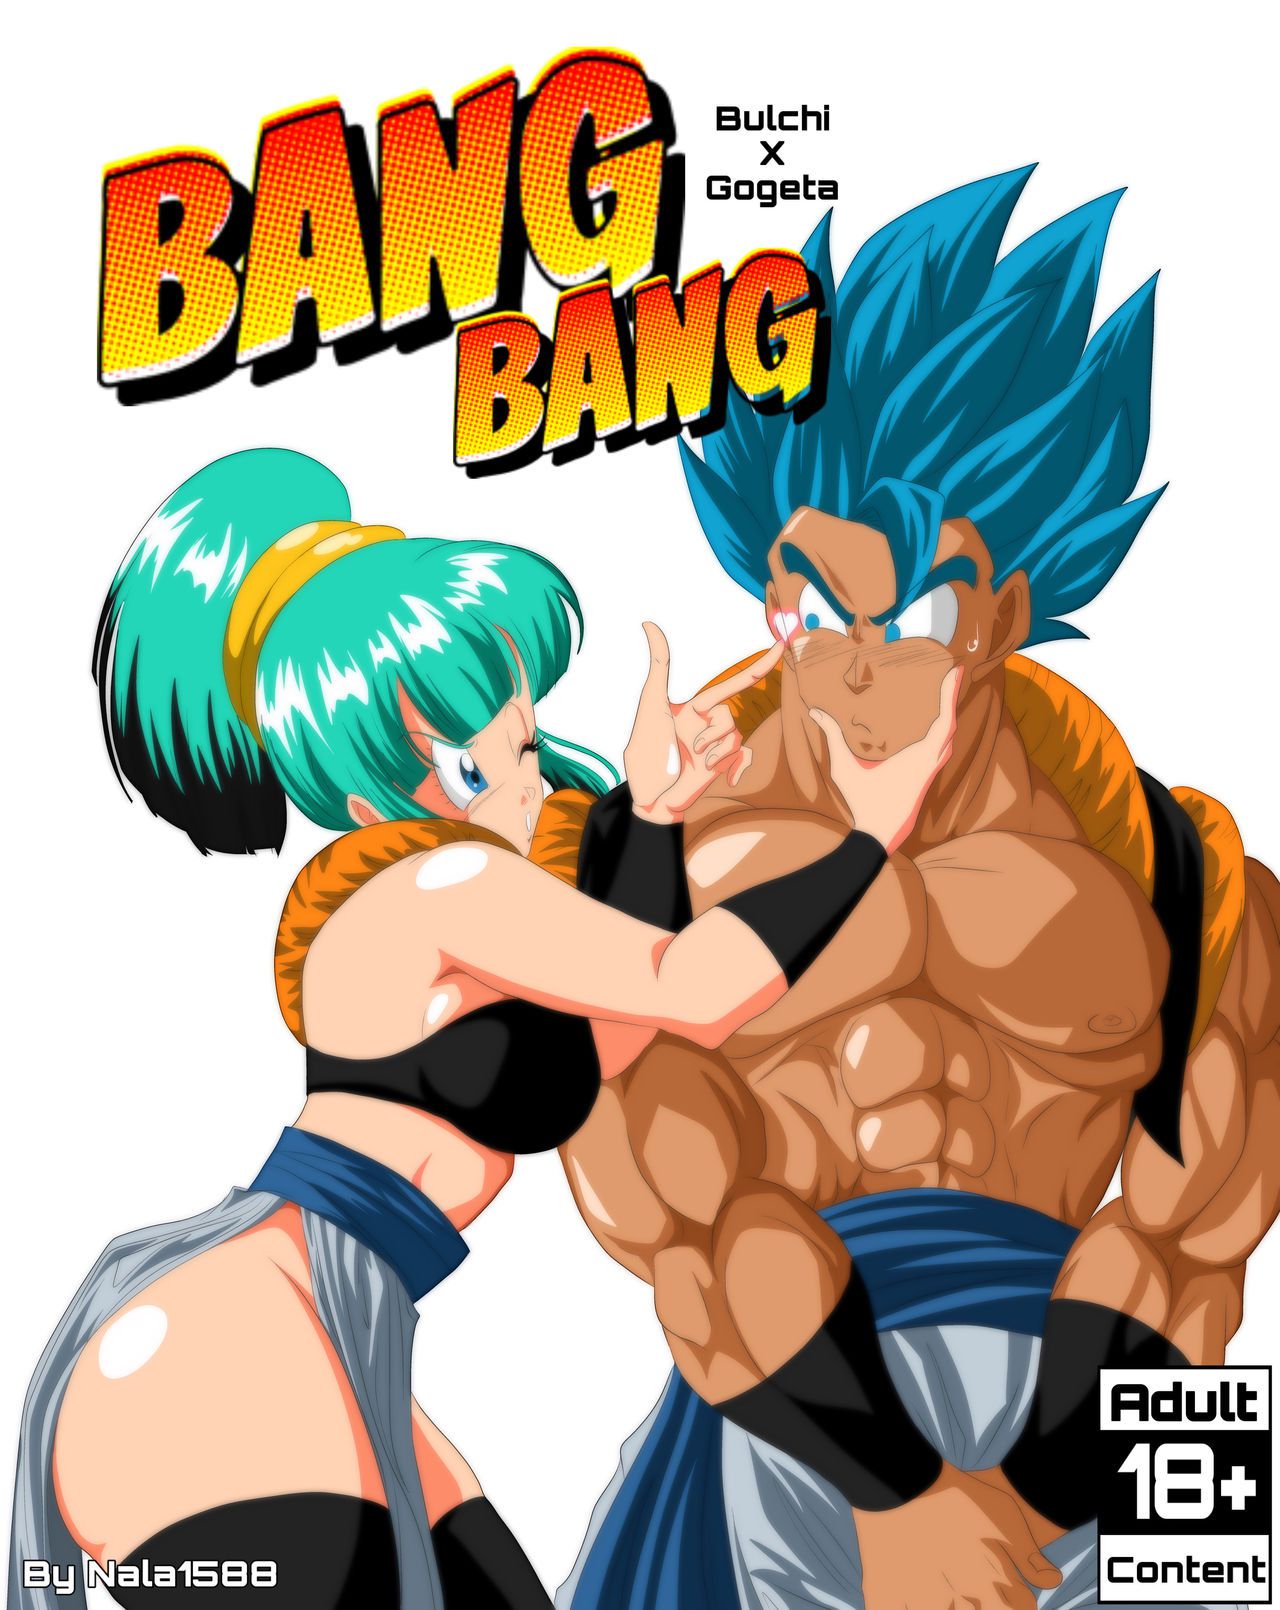 [Nala1588] Bang Bang - Bulchi x Gogeta (Dragon Ball Super) [Ongoing] 1